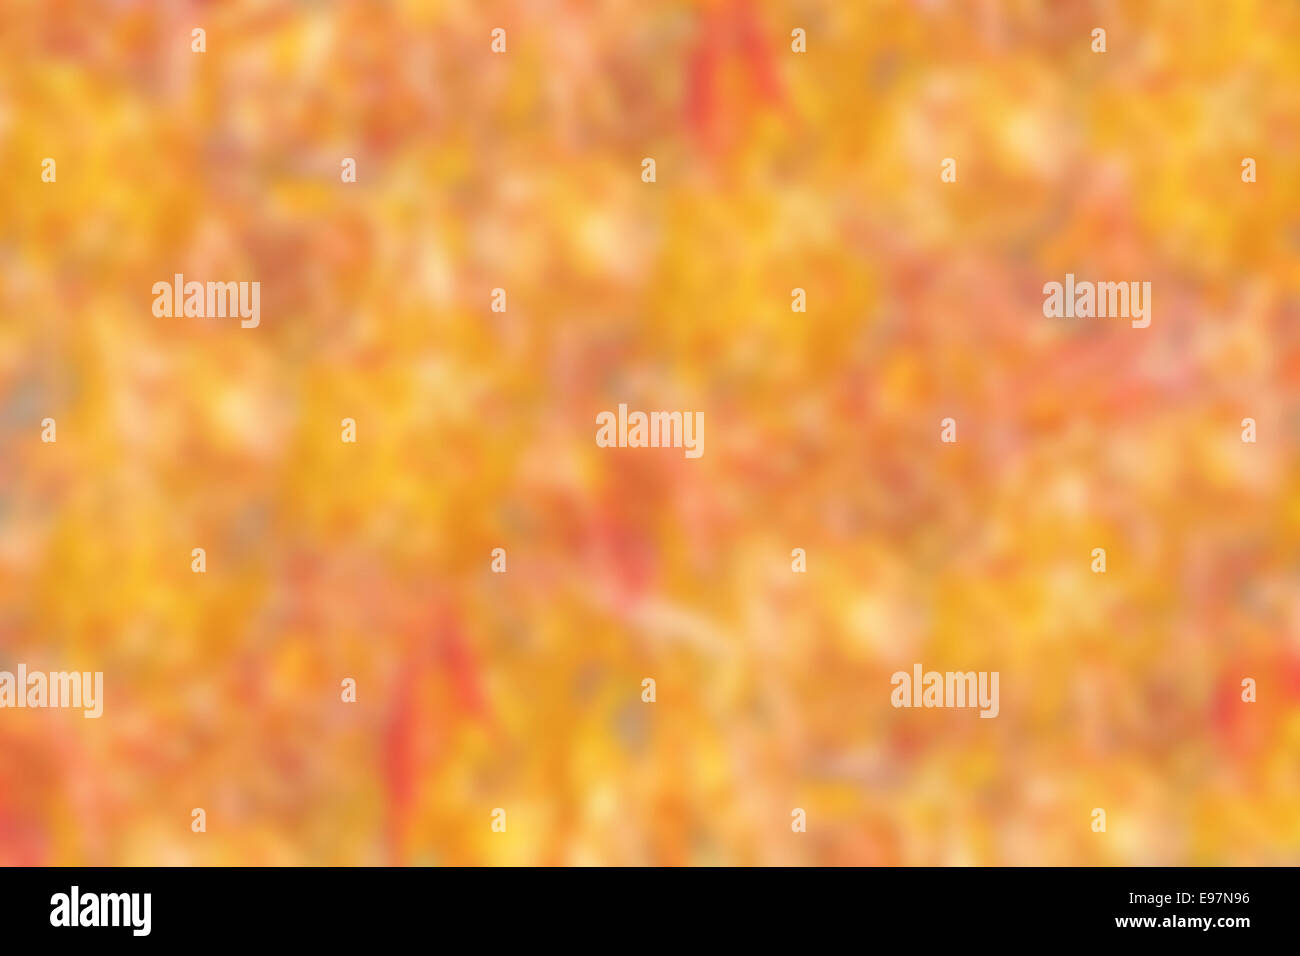 Pastell abstrakt der Hintergrund jedoch unscharf, orange, gelbe und rote Farben Stockfoto